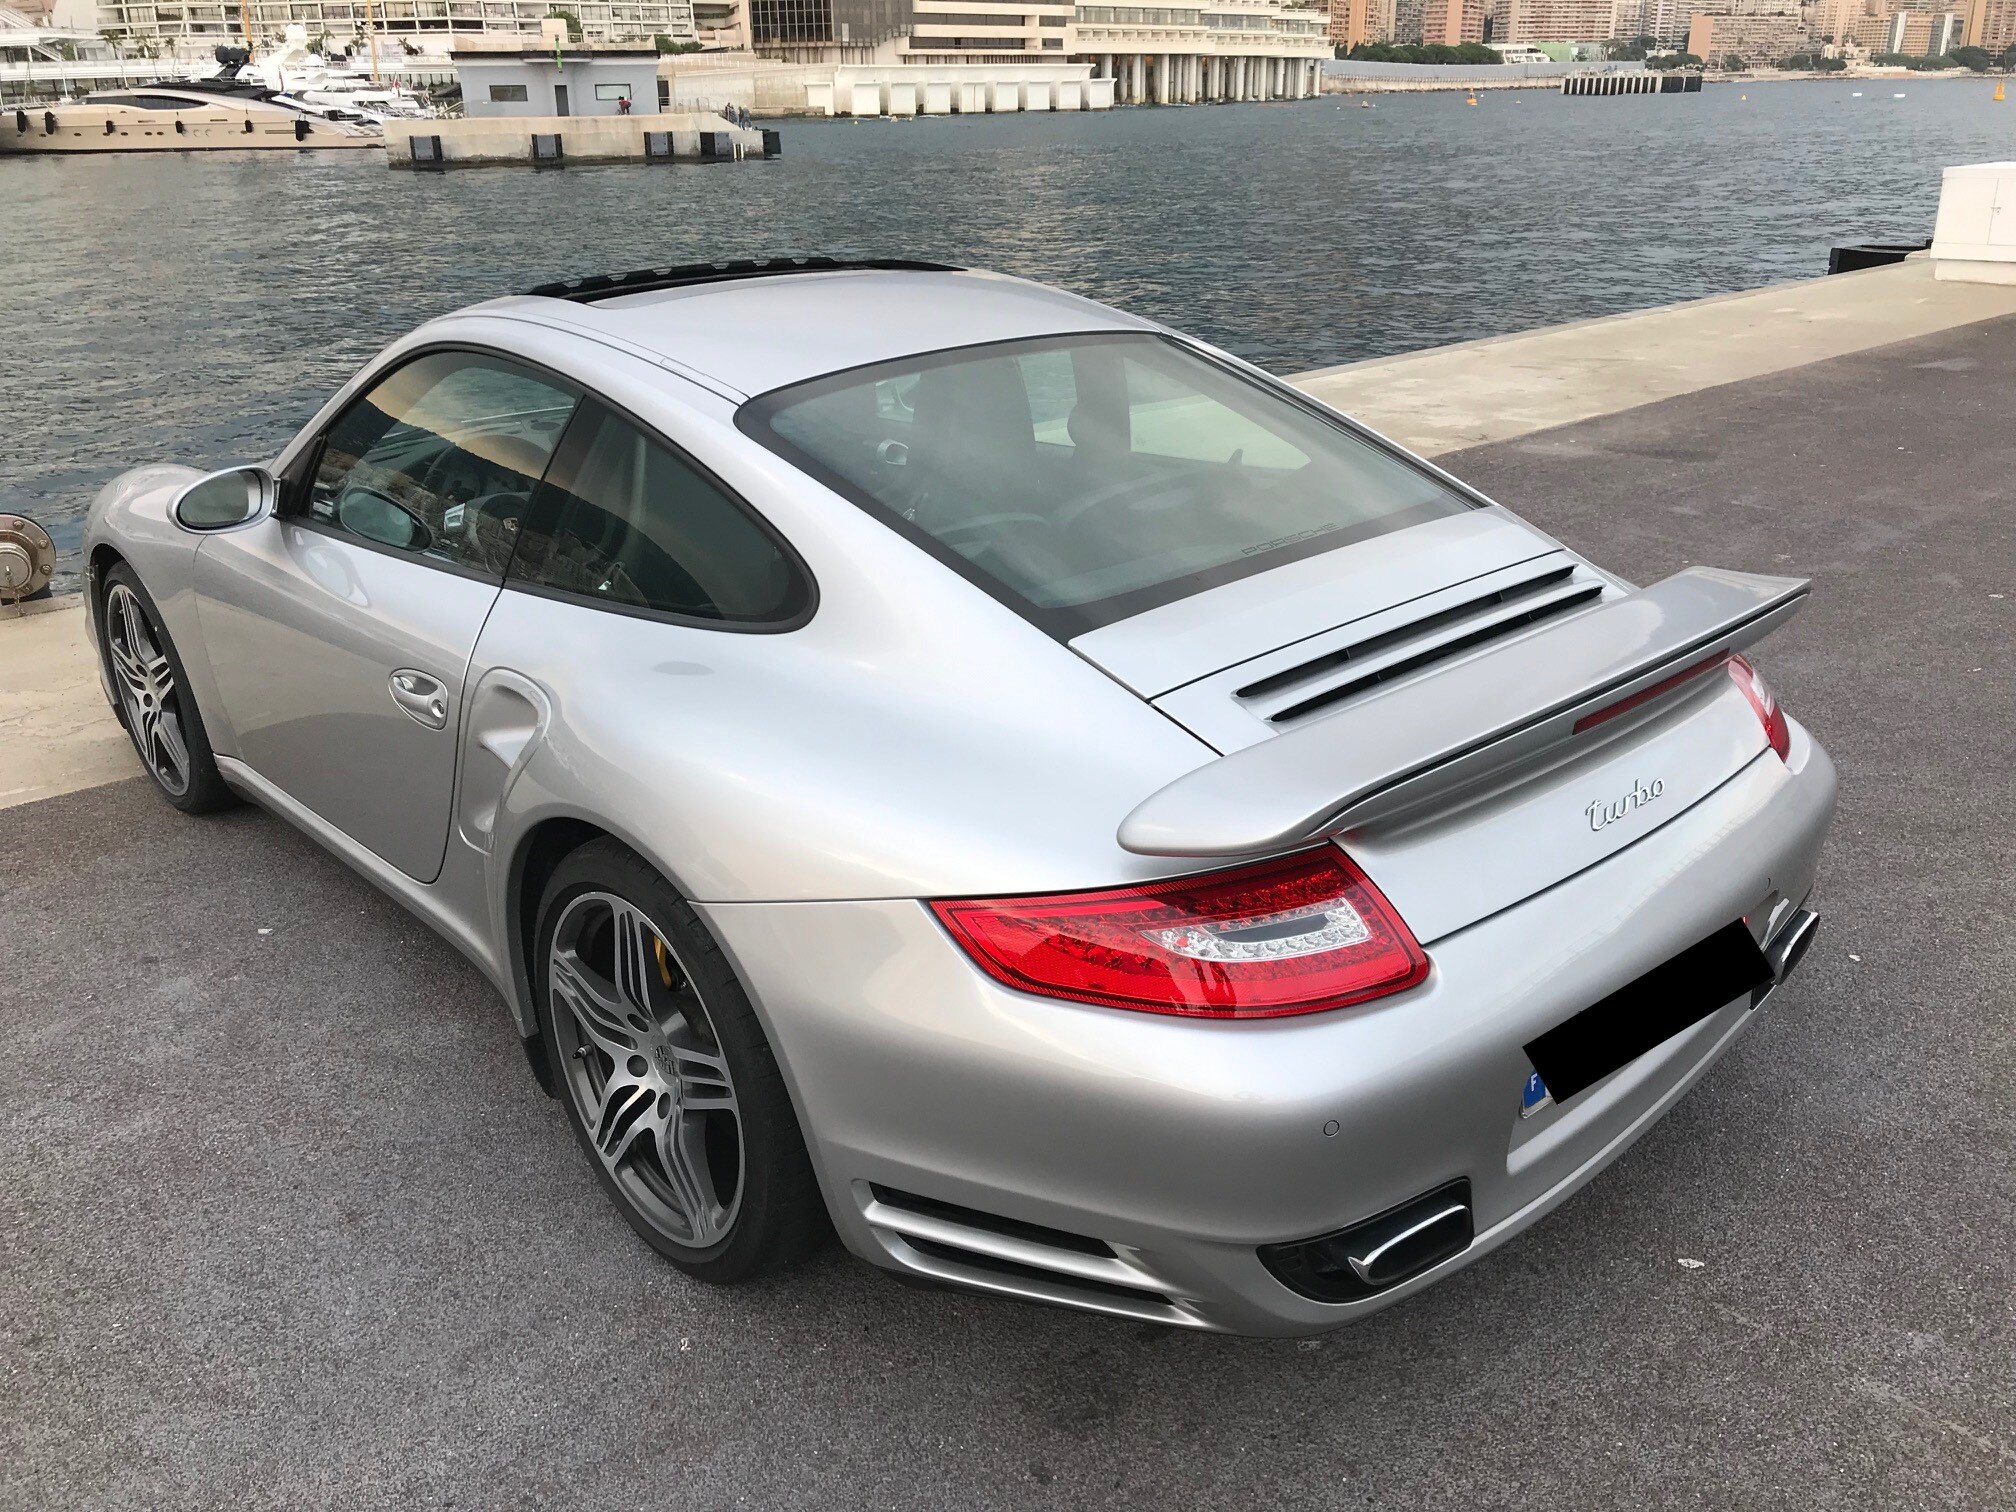 Porsche-997-turbo-gris-argent-771%20(7)sds.jpg